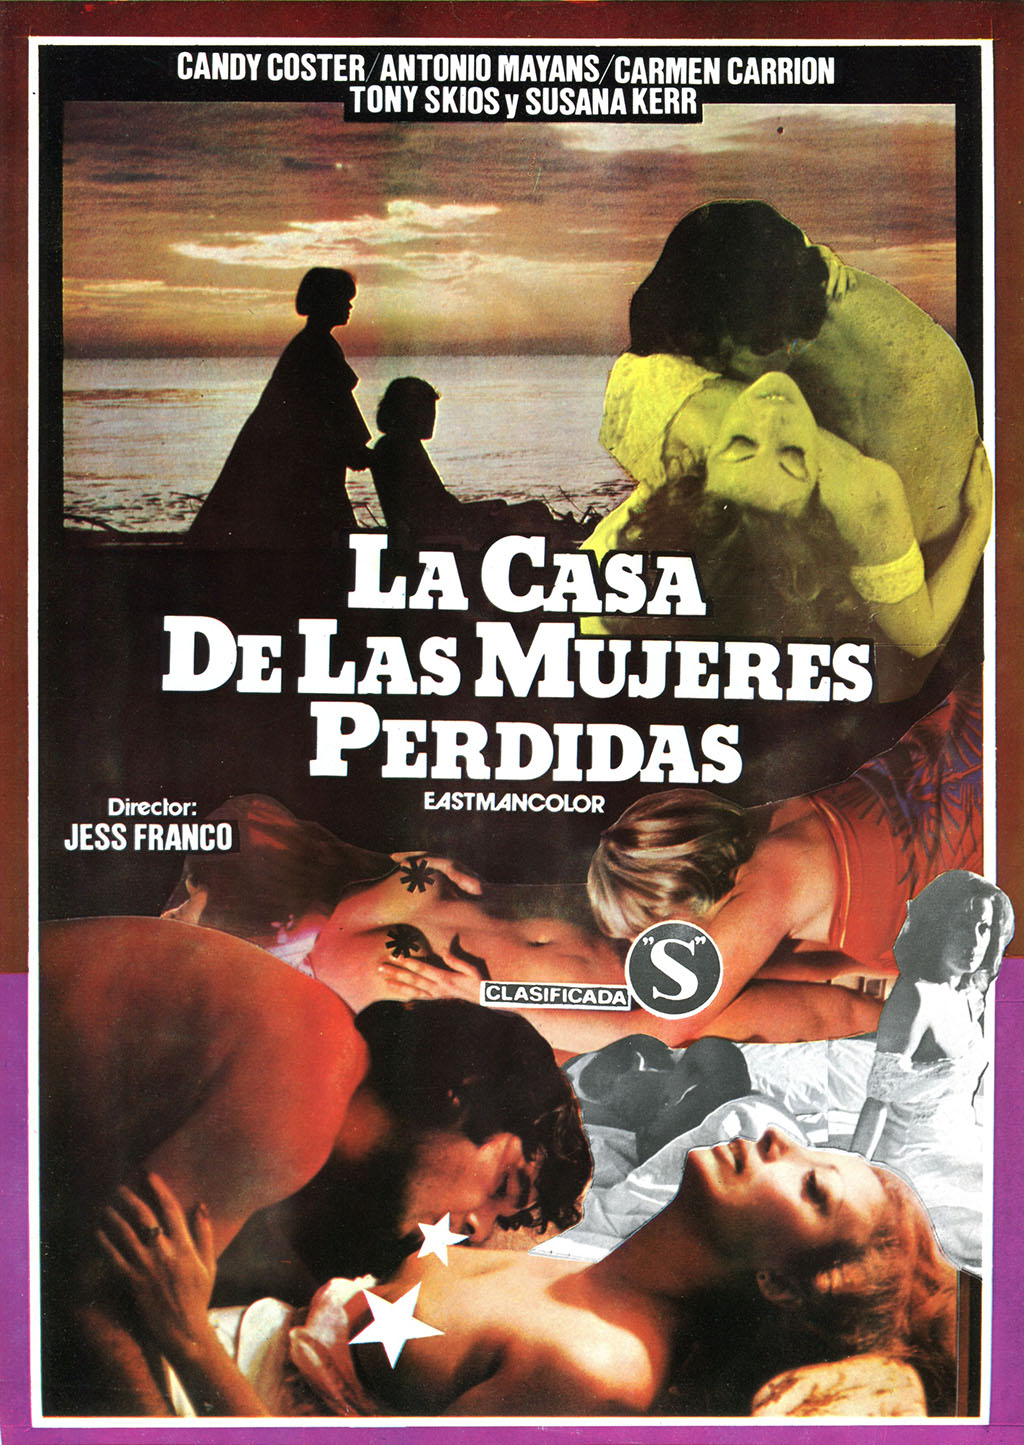 La Casa De Las Mujeres Perdidas (1983) - Original Poster - vintagepornfun.com